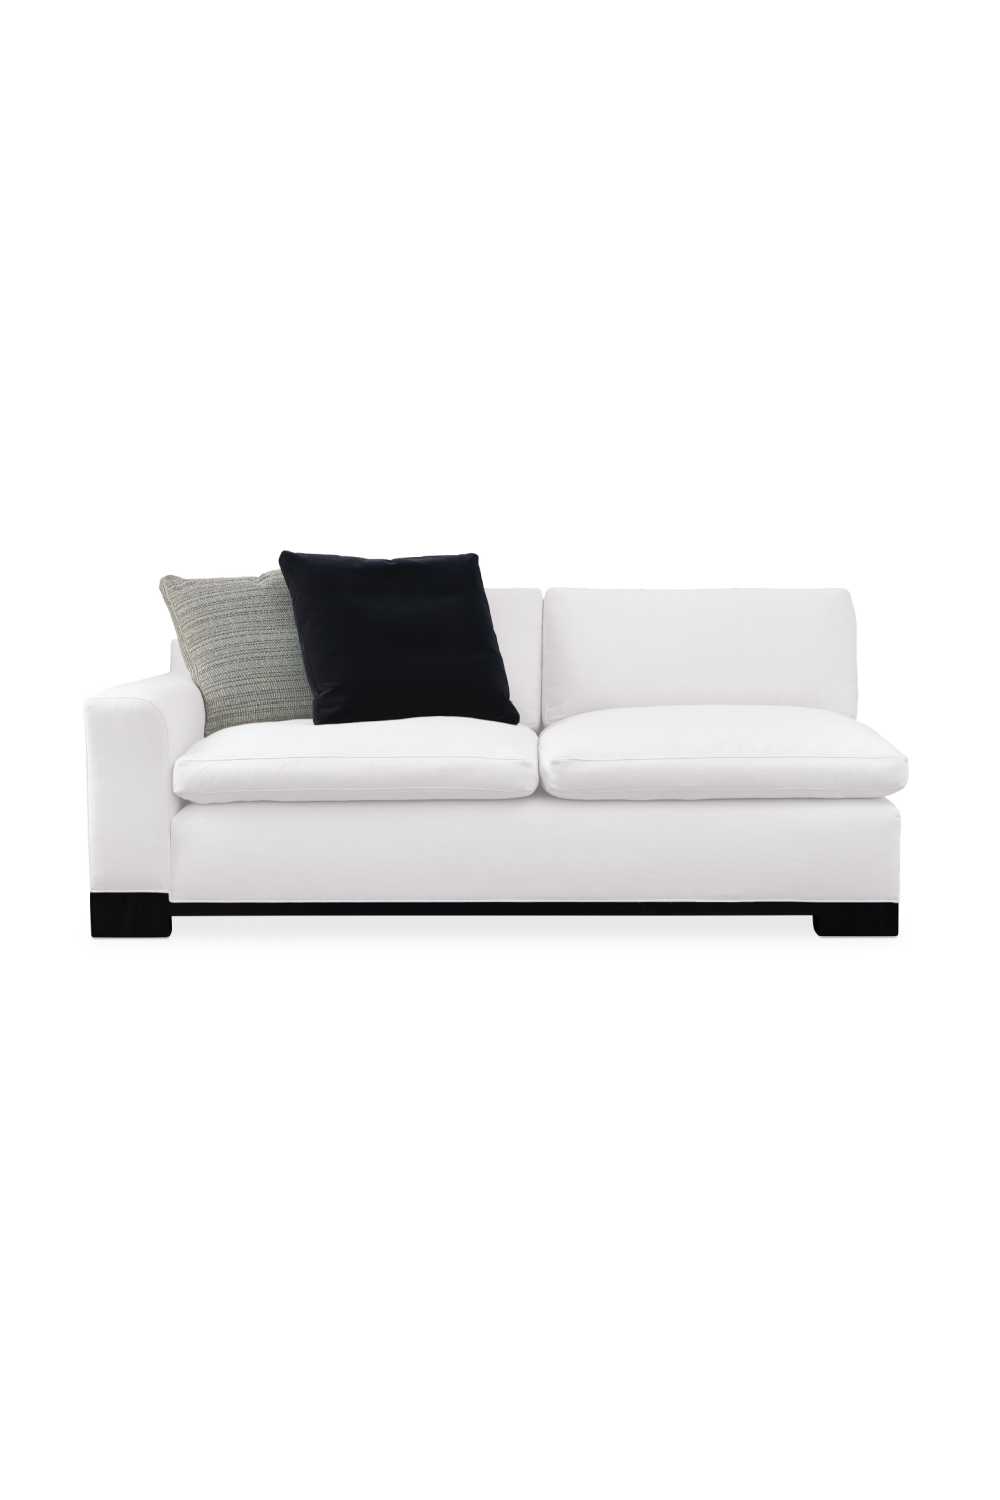 White Modern Modular Sofa | Caracole Refresh